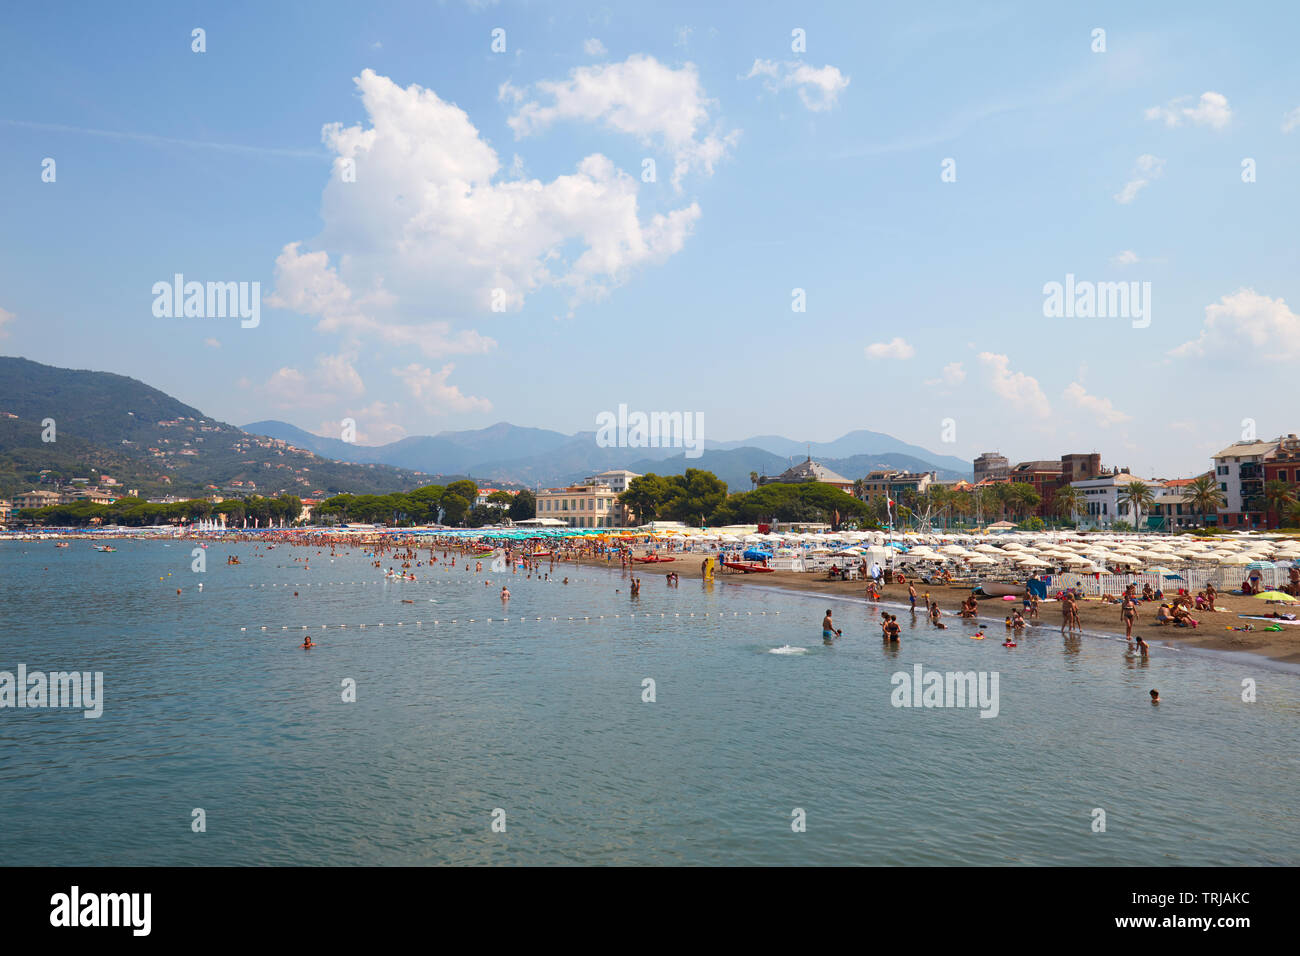 SESTRI LEVANTE, ITALIE - 23 août 2018 : Sestri Levante, littoral de la côte avec des gens dans une journée ensoleillée en Italie Banque D'Images